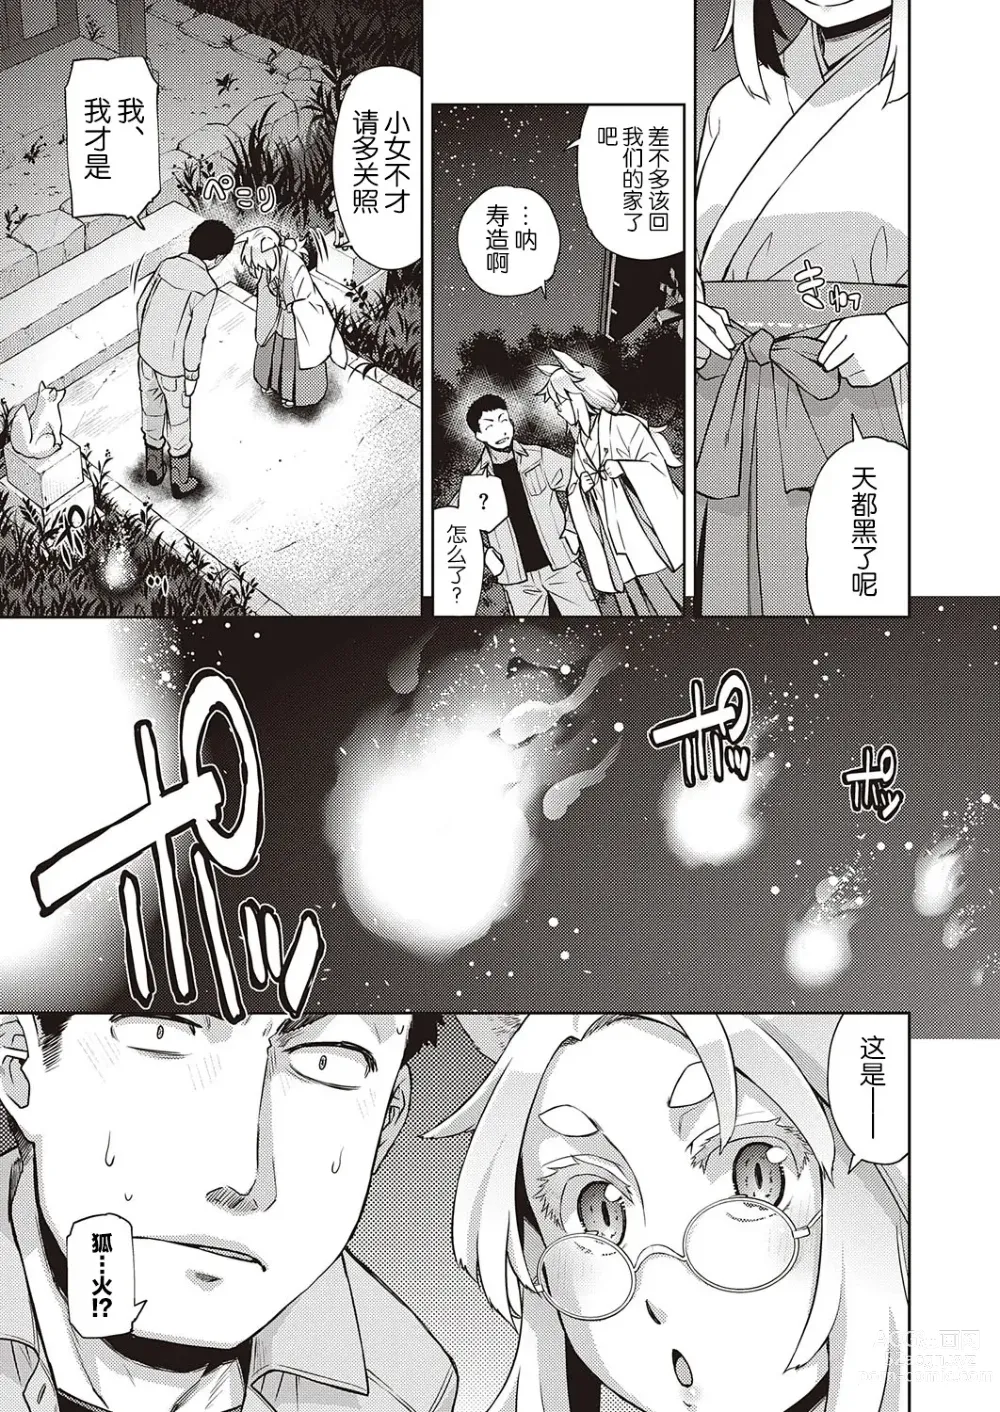 Page 23 of manga Mate ba Megane no Kitsune ari